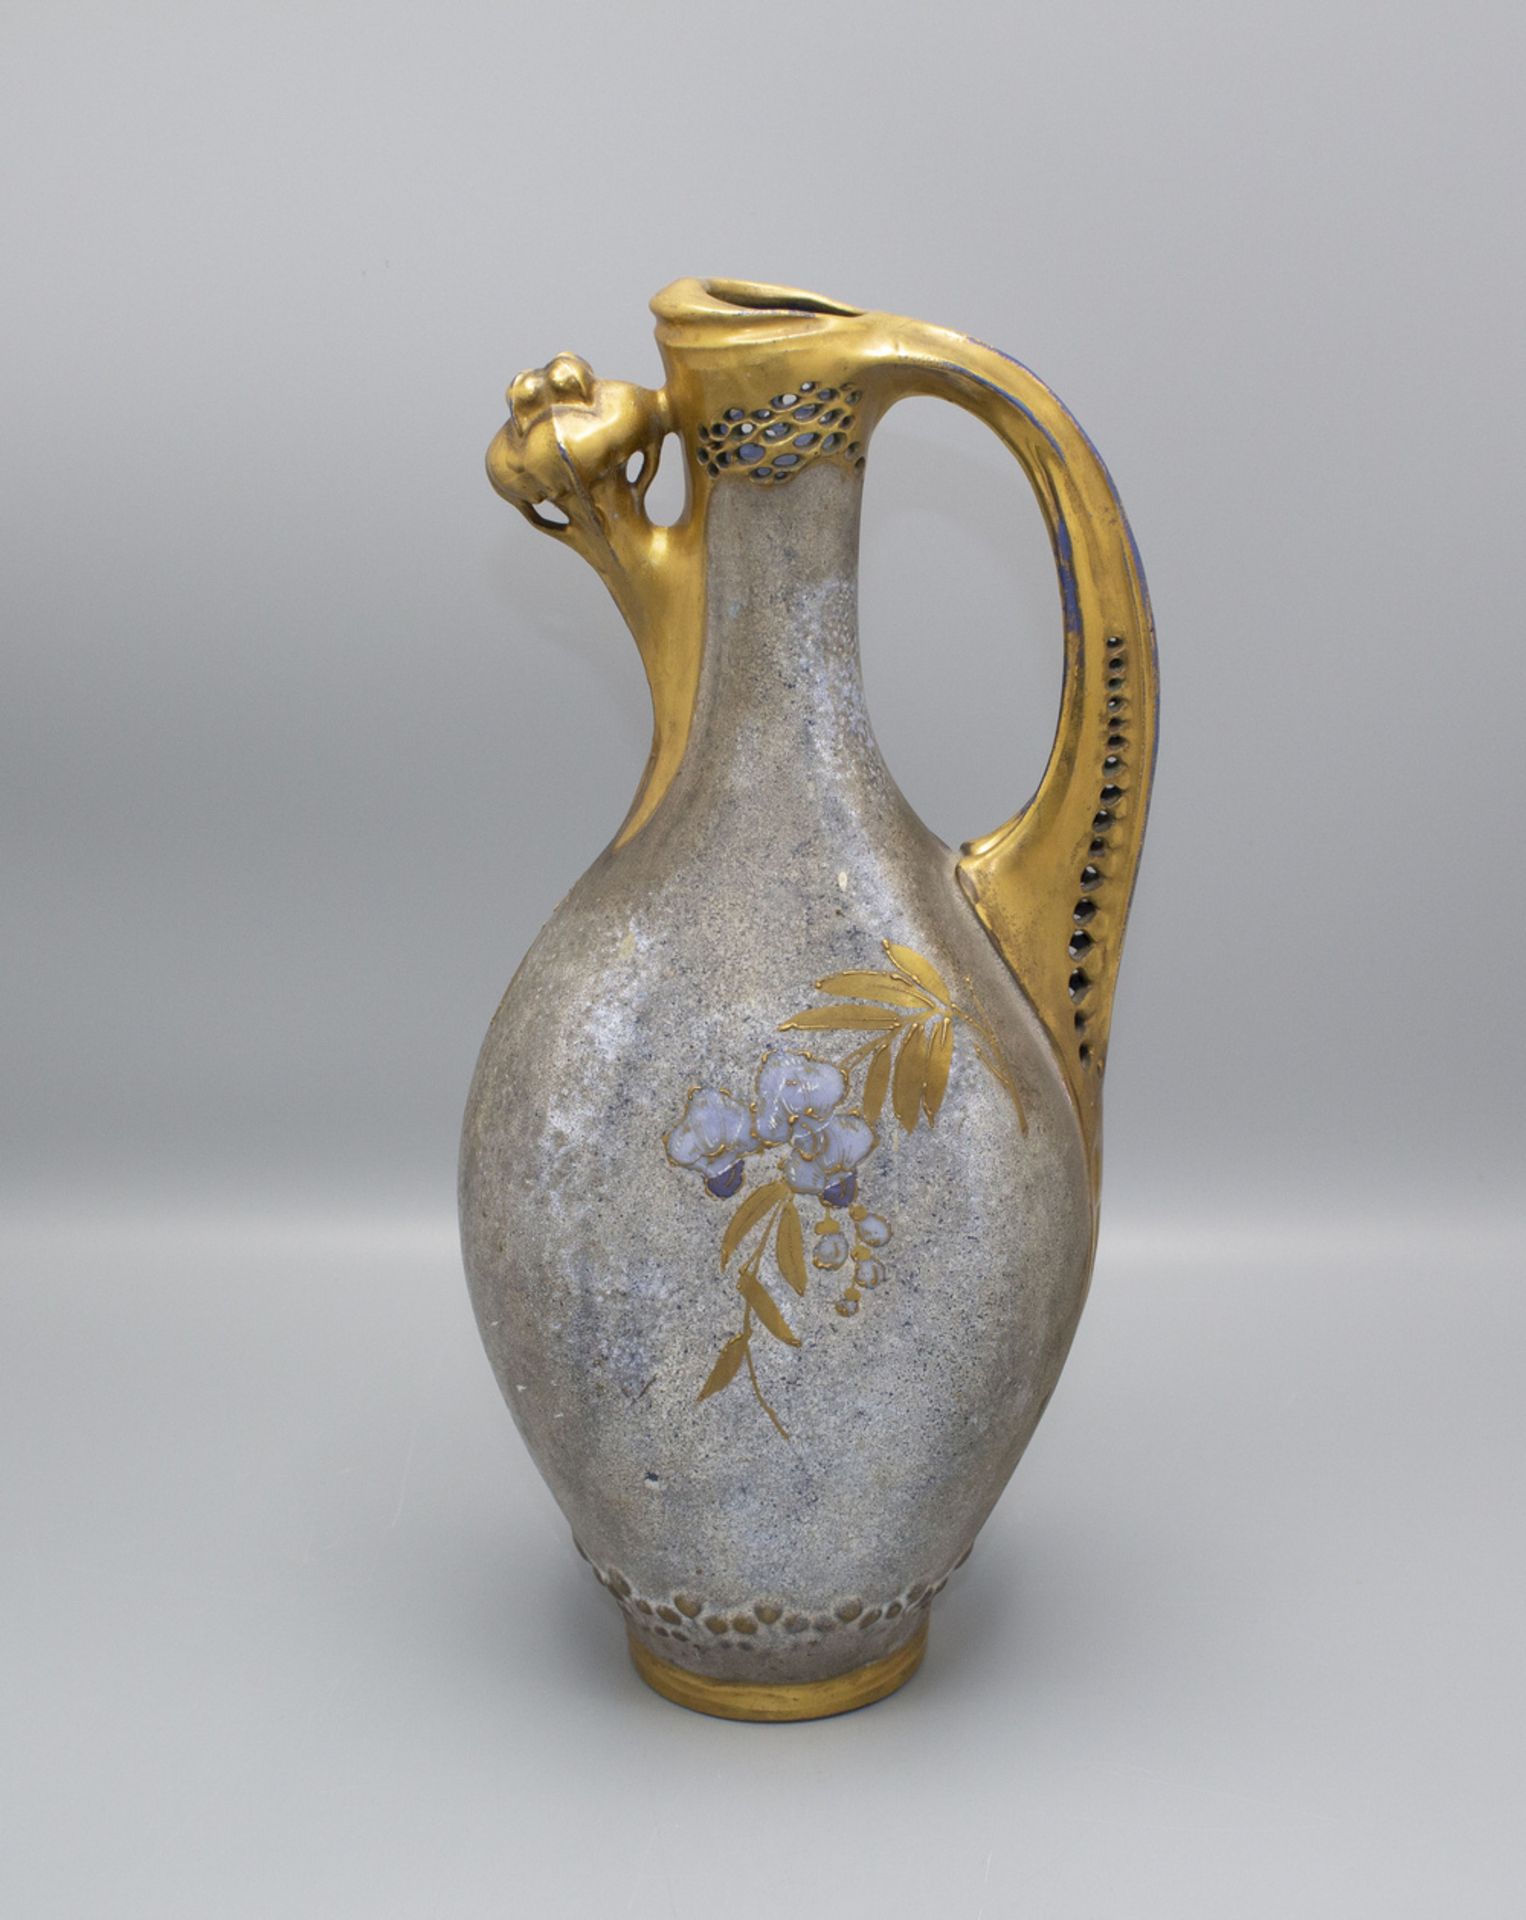 Jugendstil Henkelvase bzw. Kanne mit Blauregen / An Art Nouveau decorative vase or jug with ... - Image 2 of 6